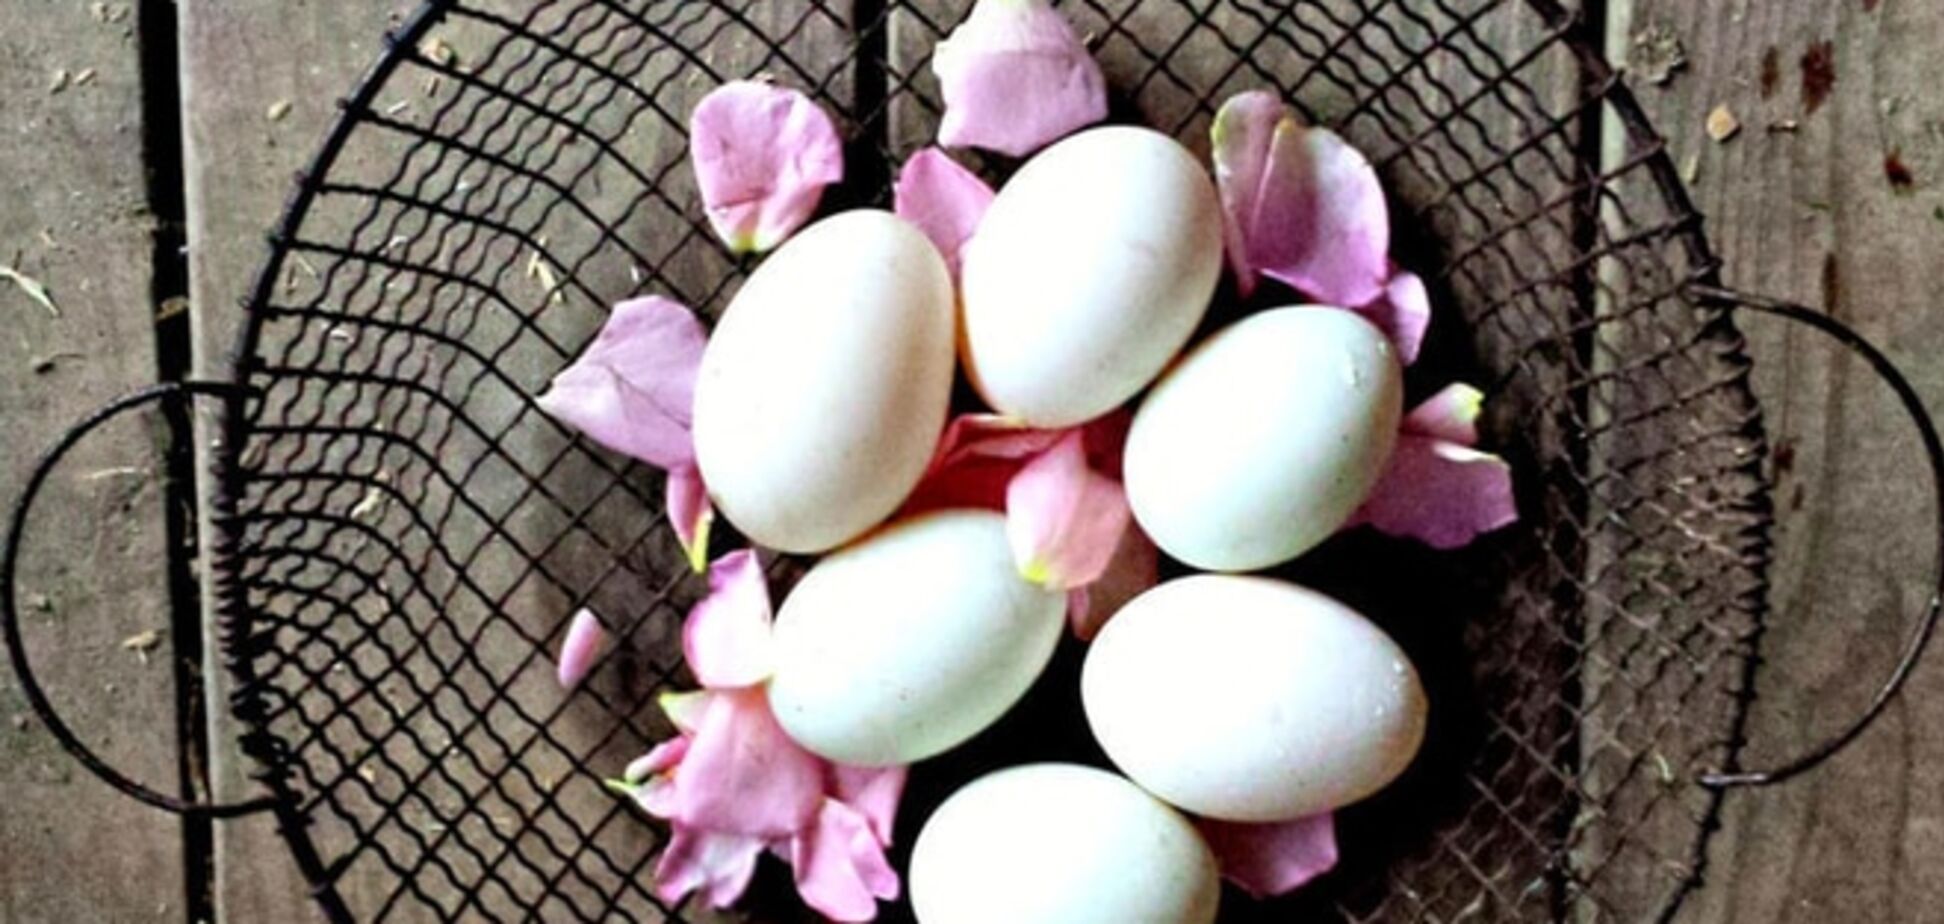 Как проверить свежесть яиц: 4 простых способа